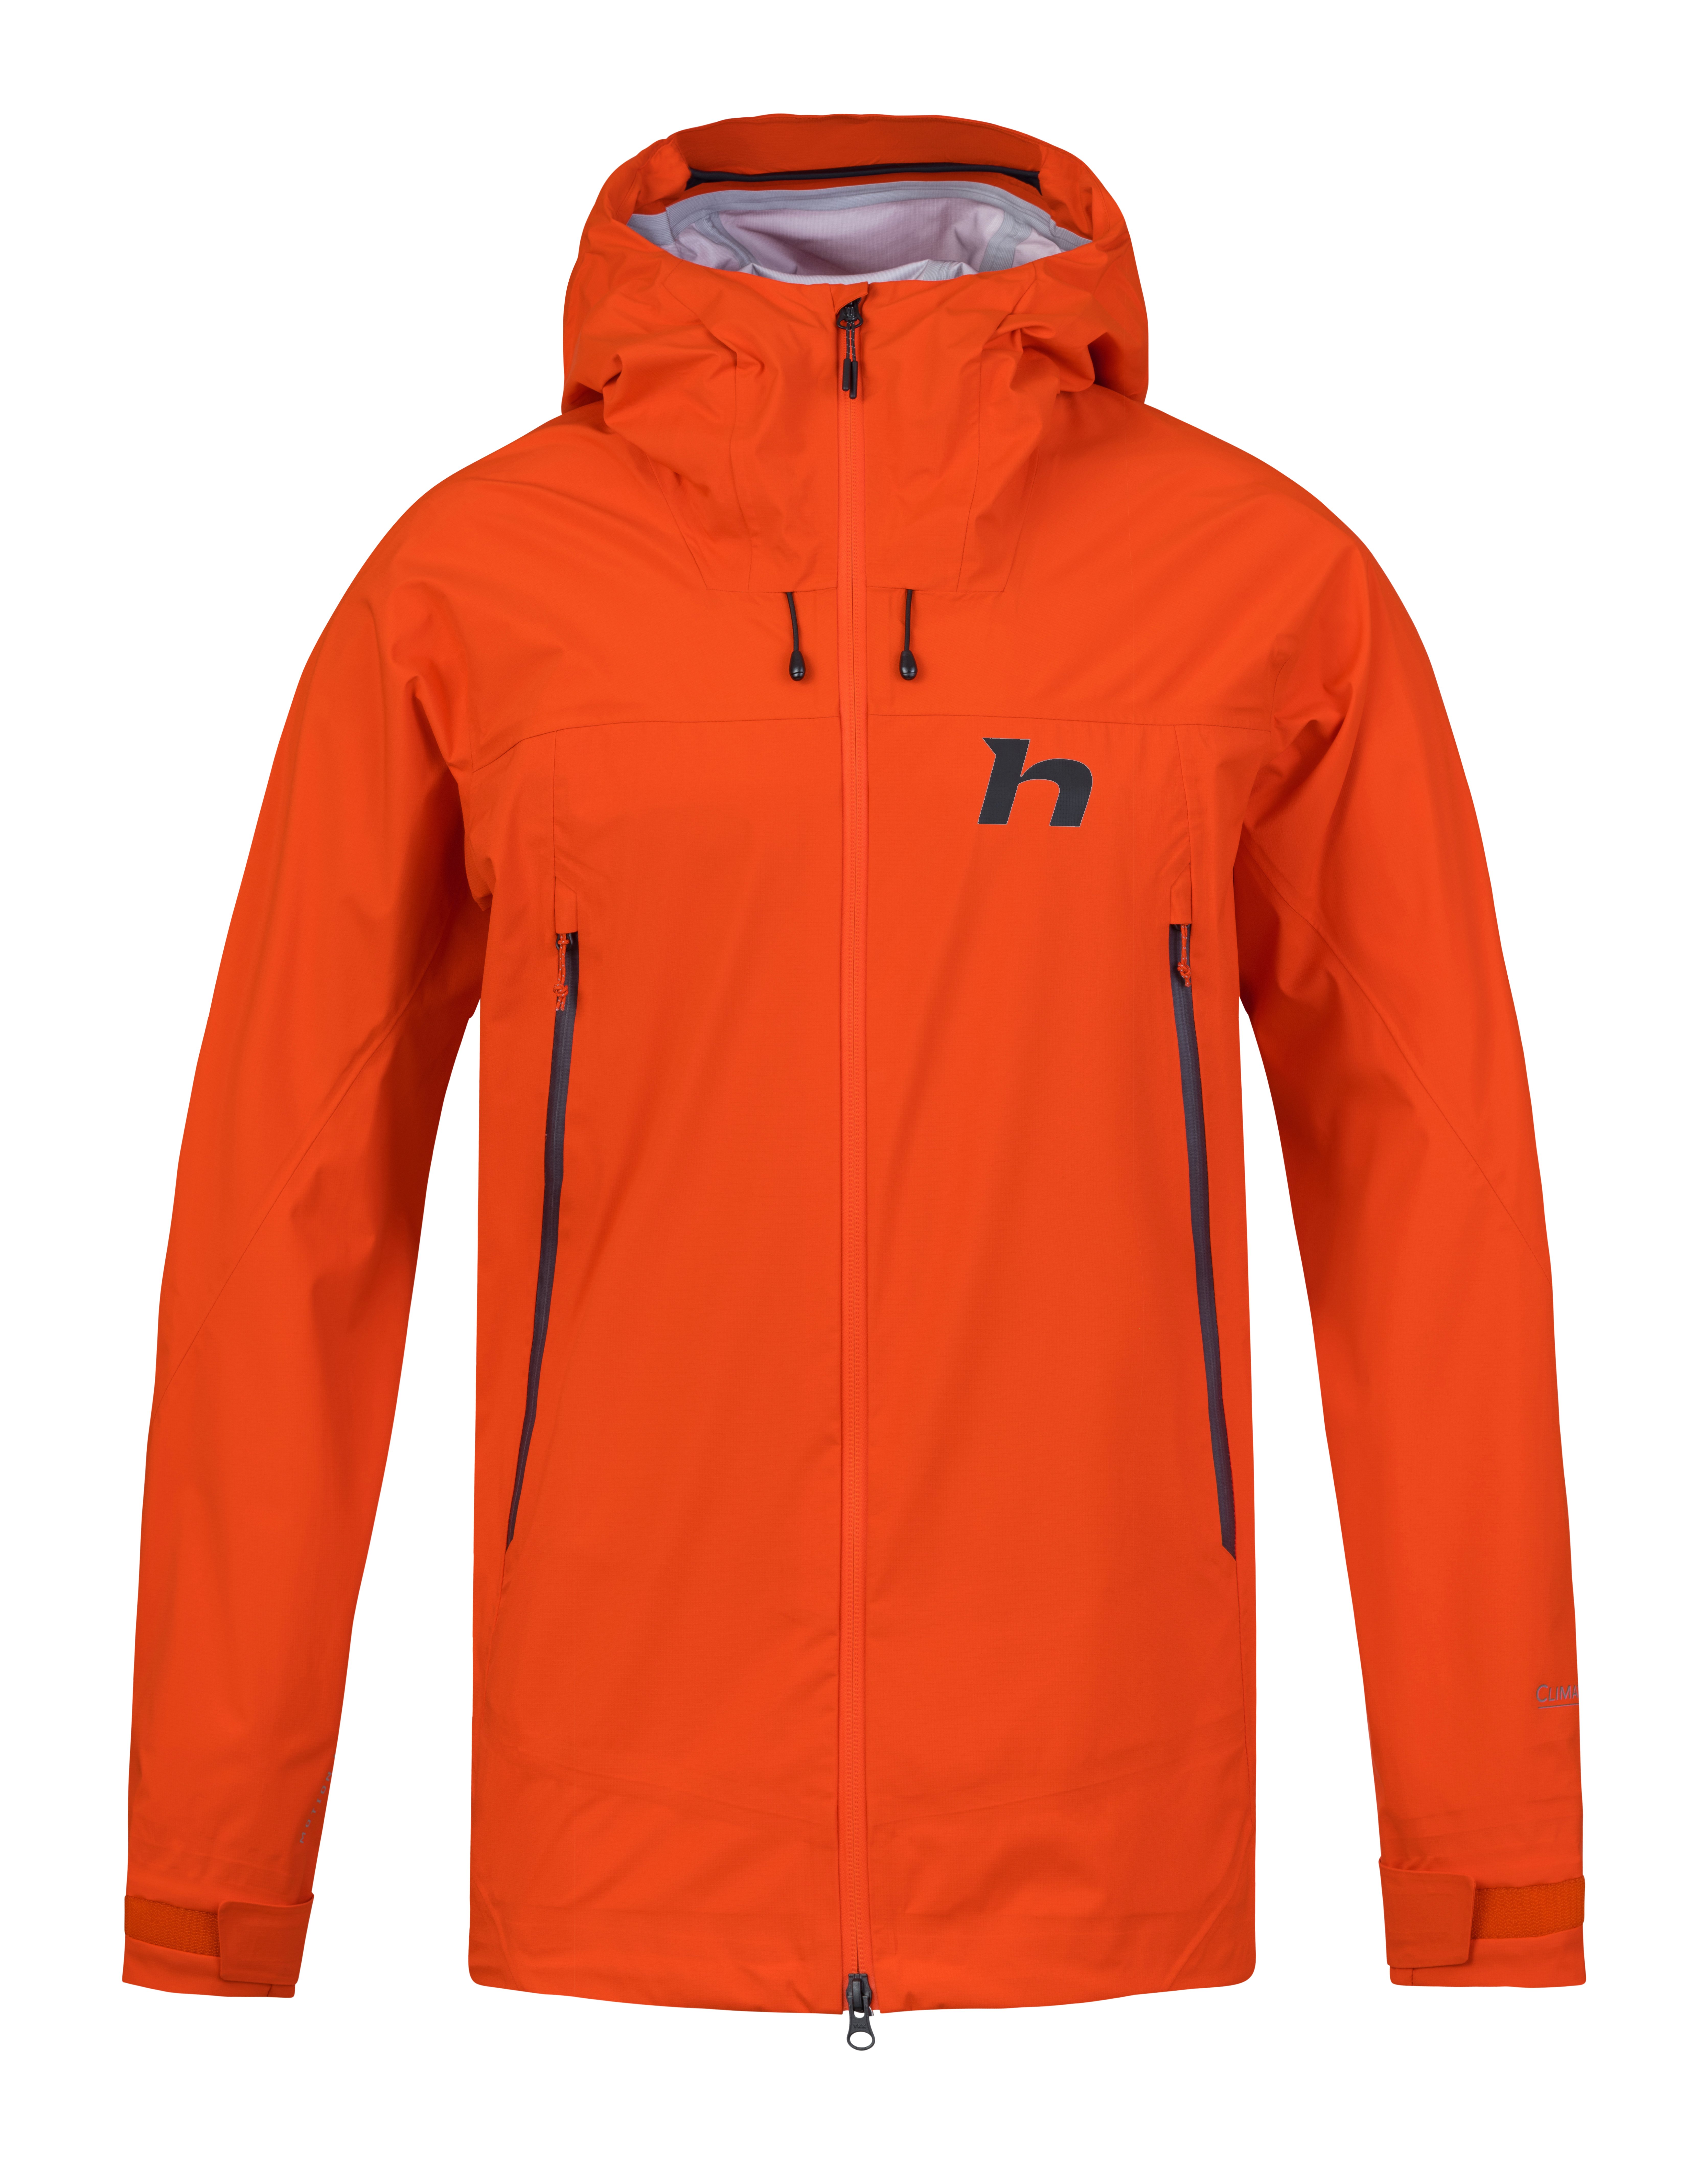 Men's hardshell jacket Hannah NEXUS spicy orange